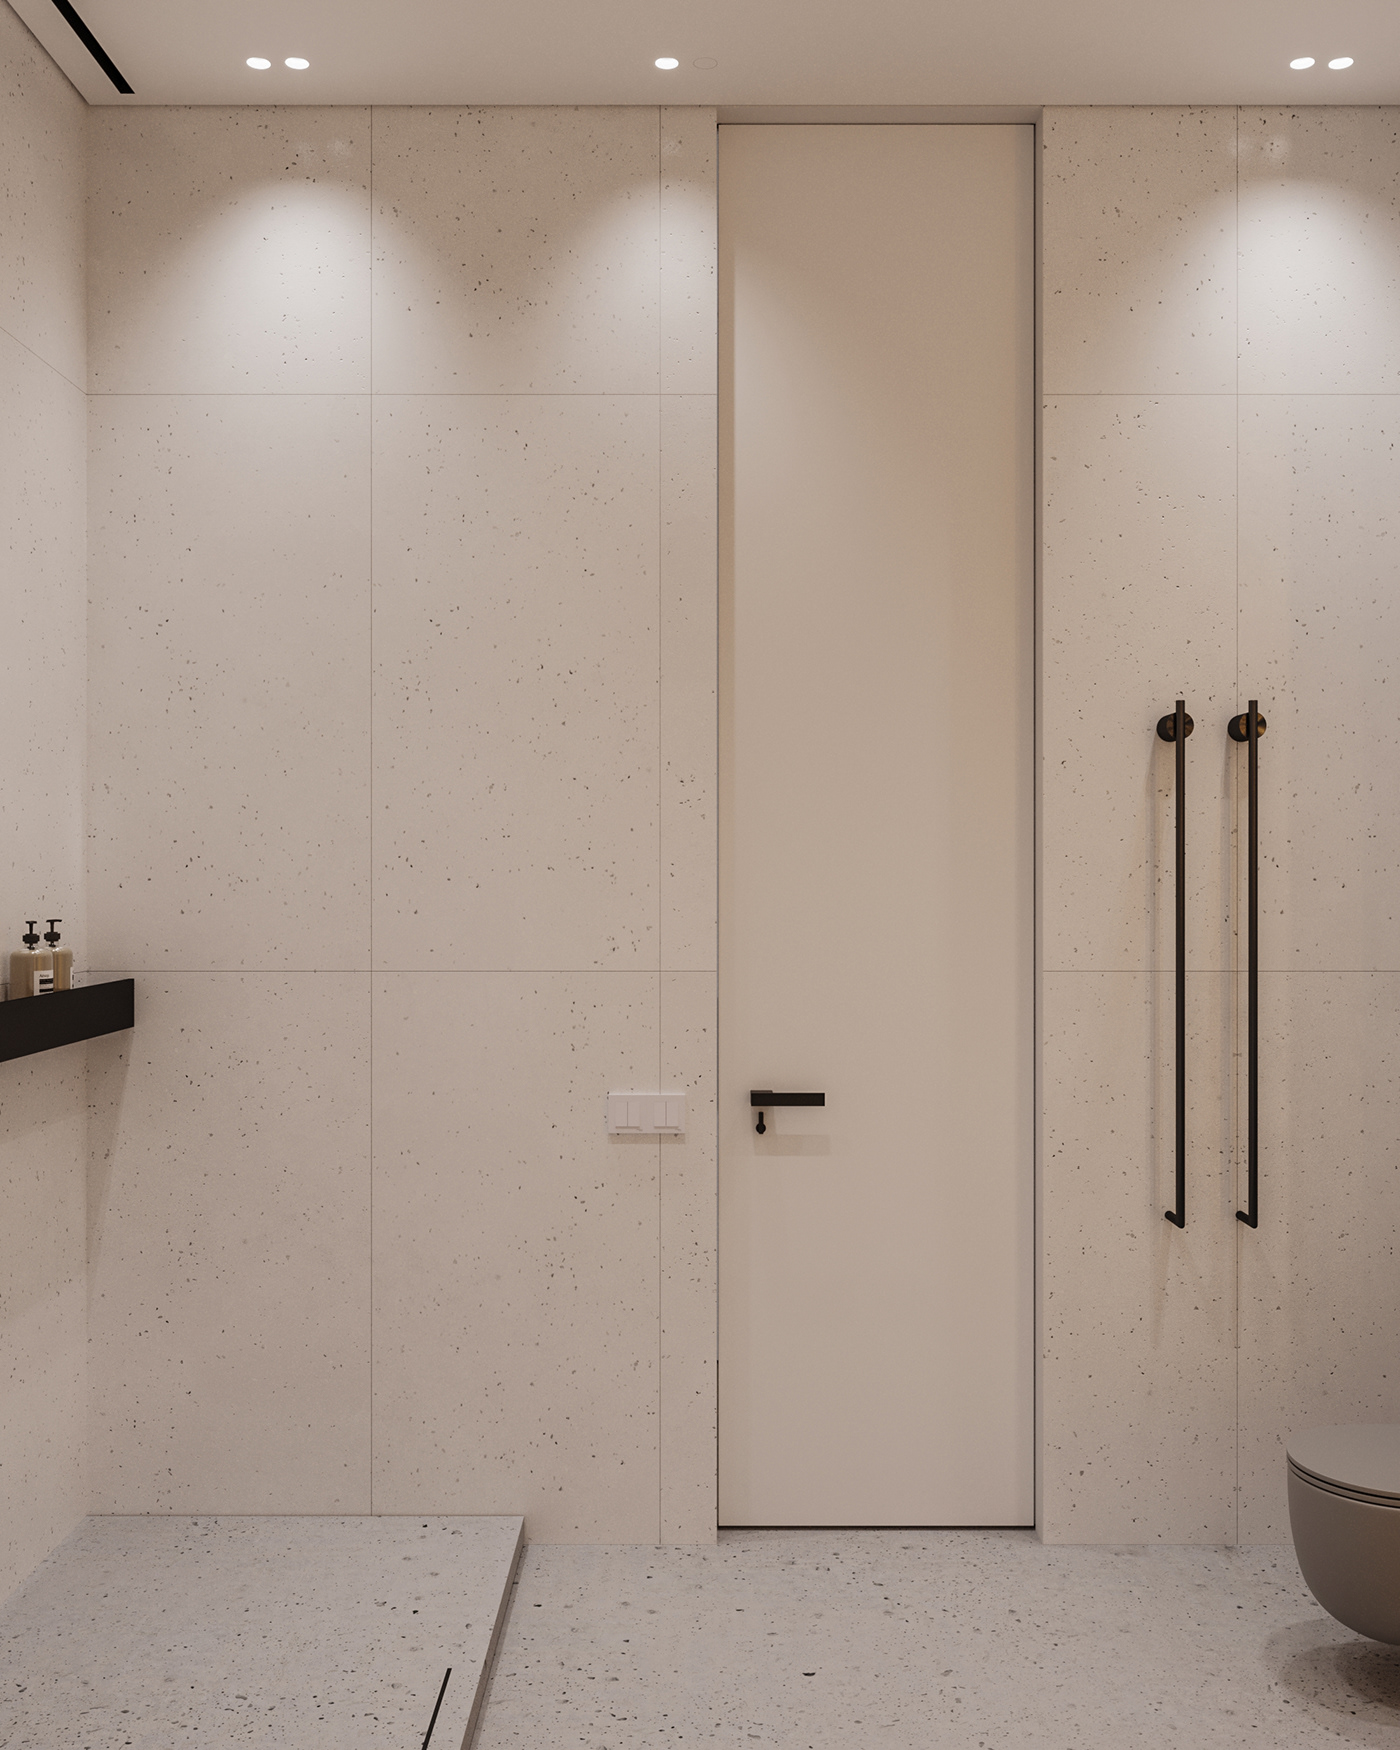 bathroom bathroom design visualization interior design  archviz CGI architecture modern exterior Render